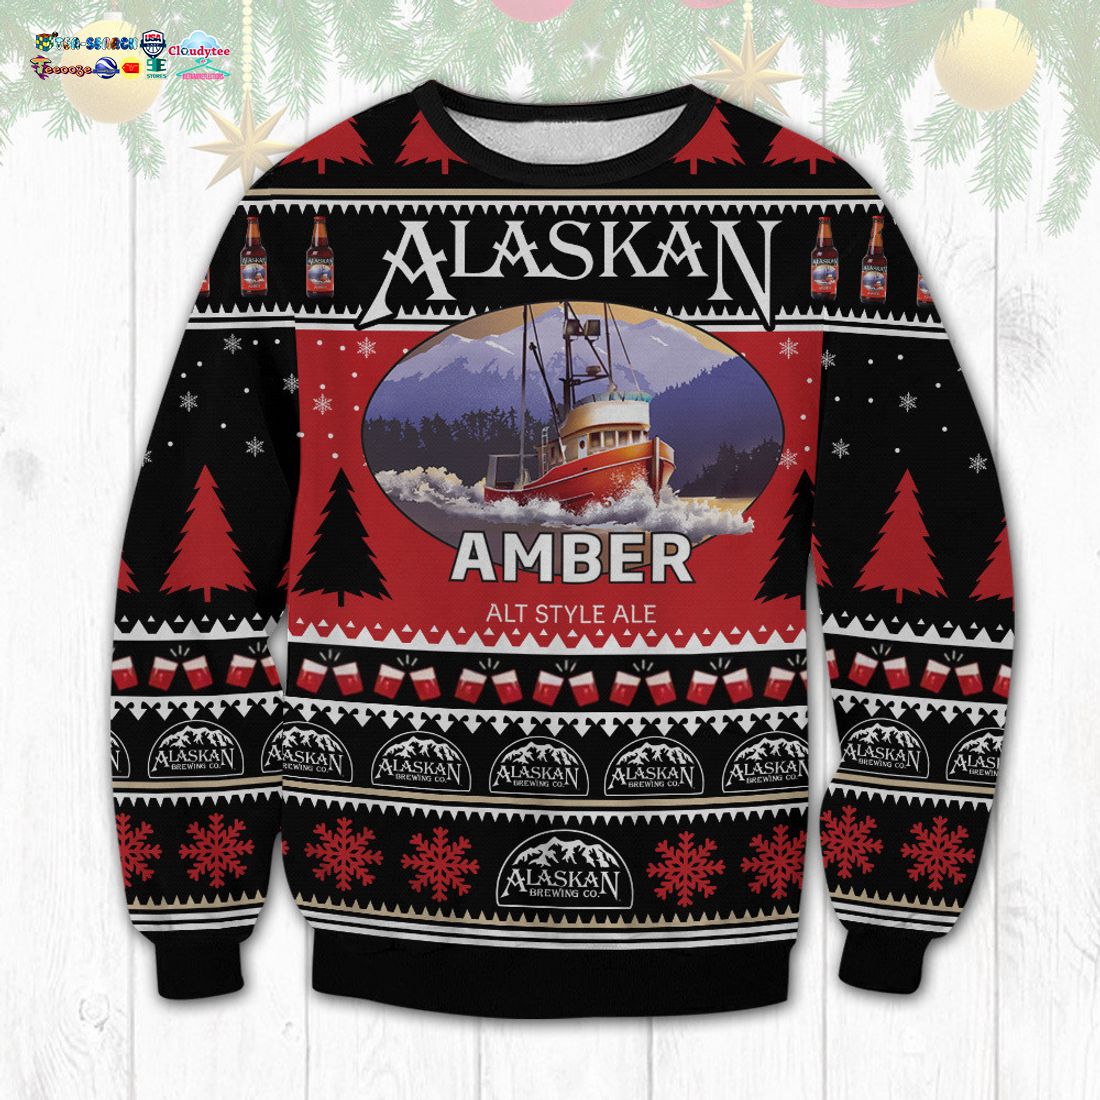 Alaskan Amber Ugly Christmas Sweater